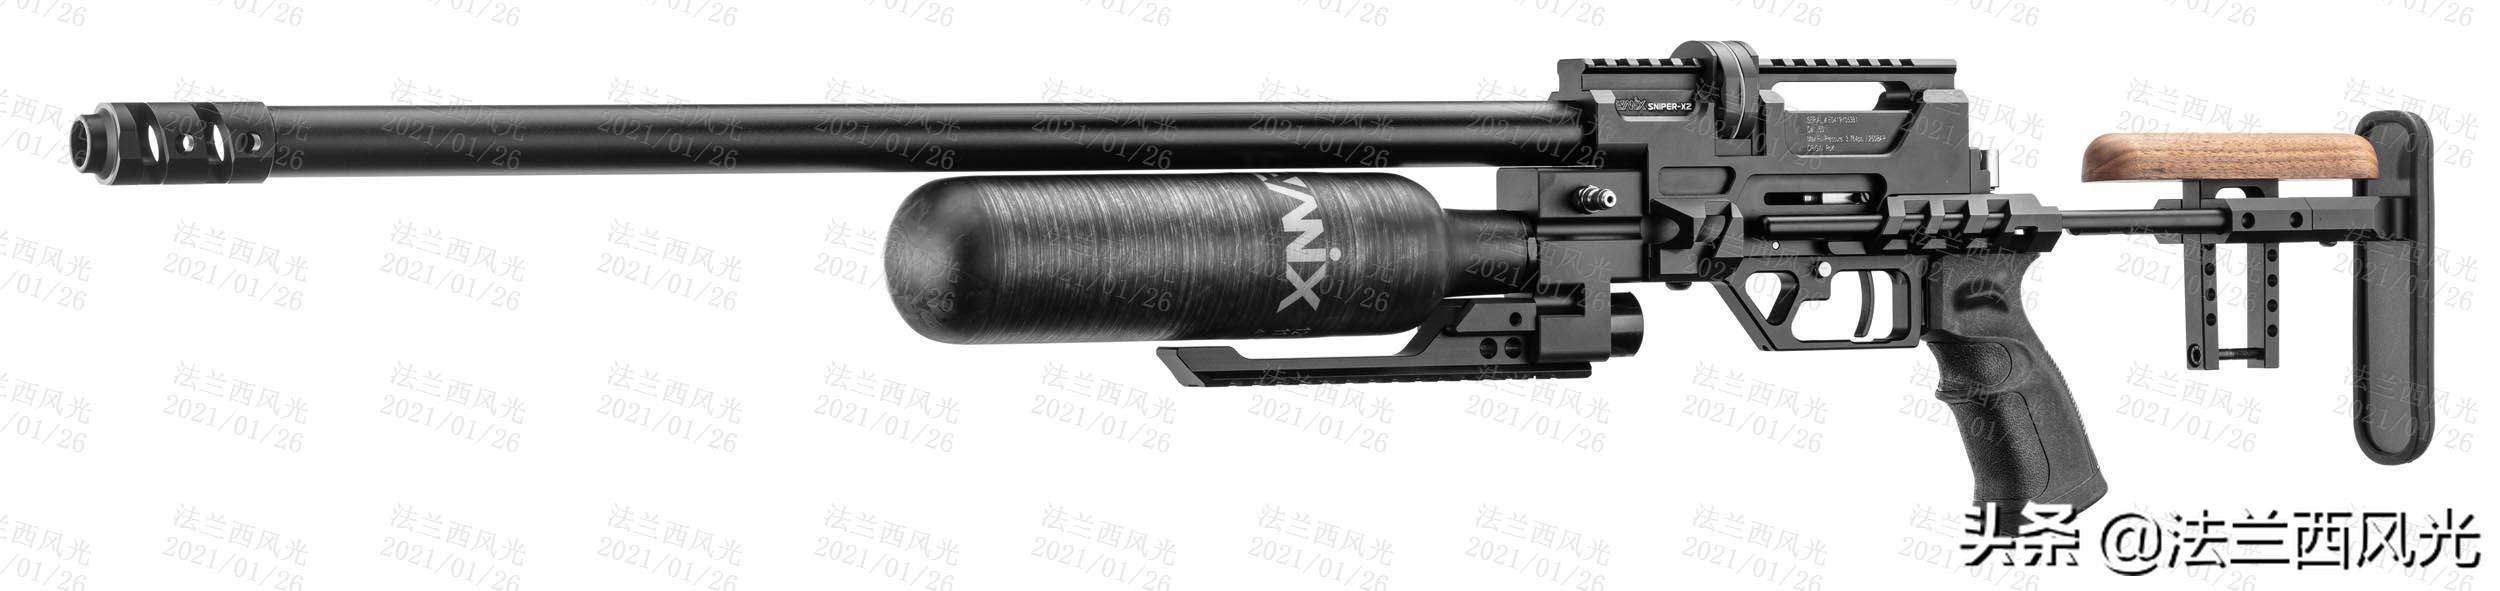 pcp( pre-charge pneumatic)气枪,也称预充气式高压气枪,简称pcp.